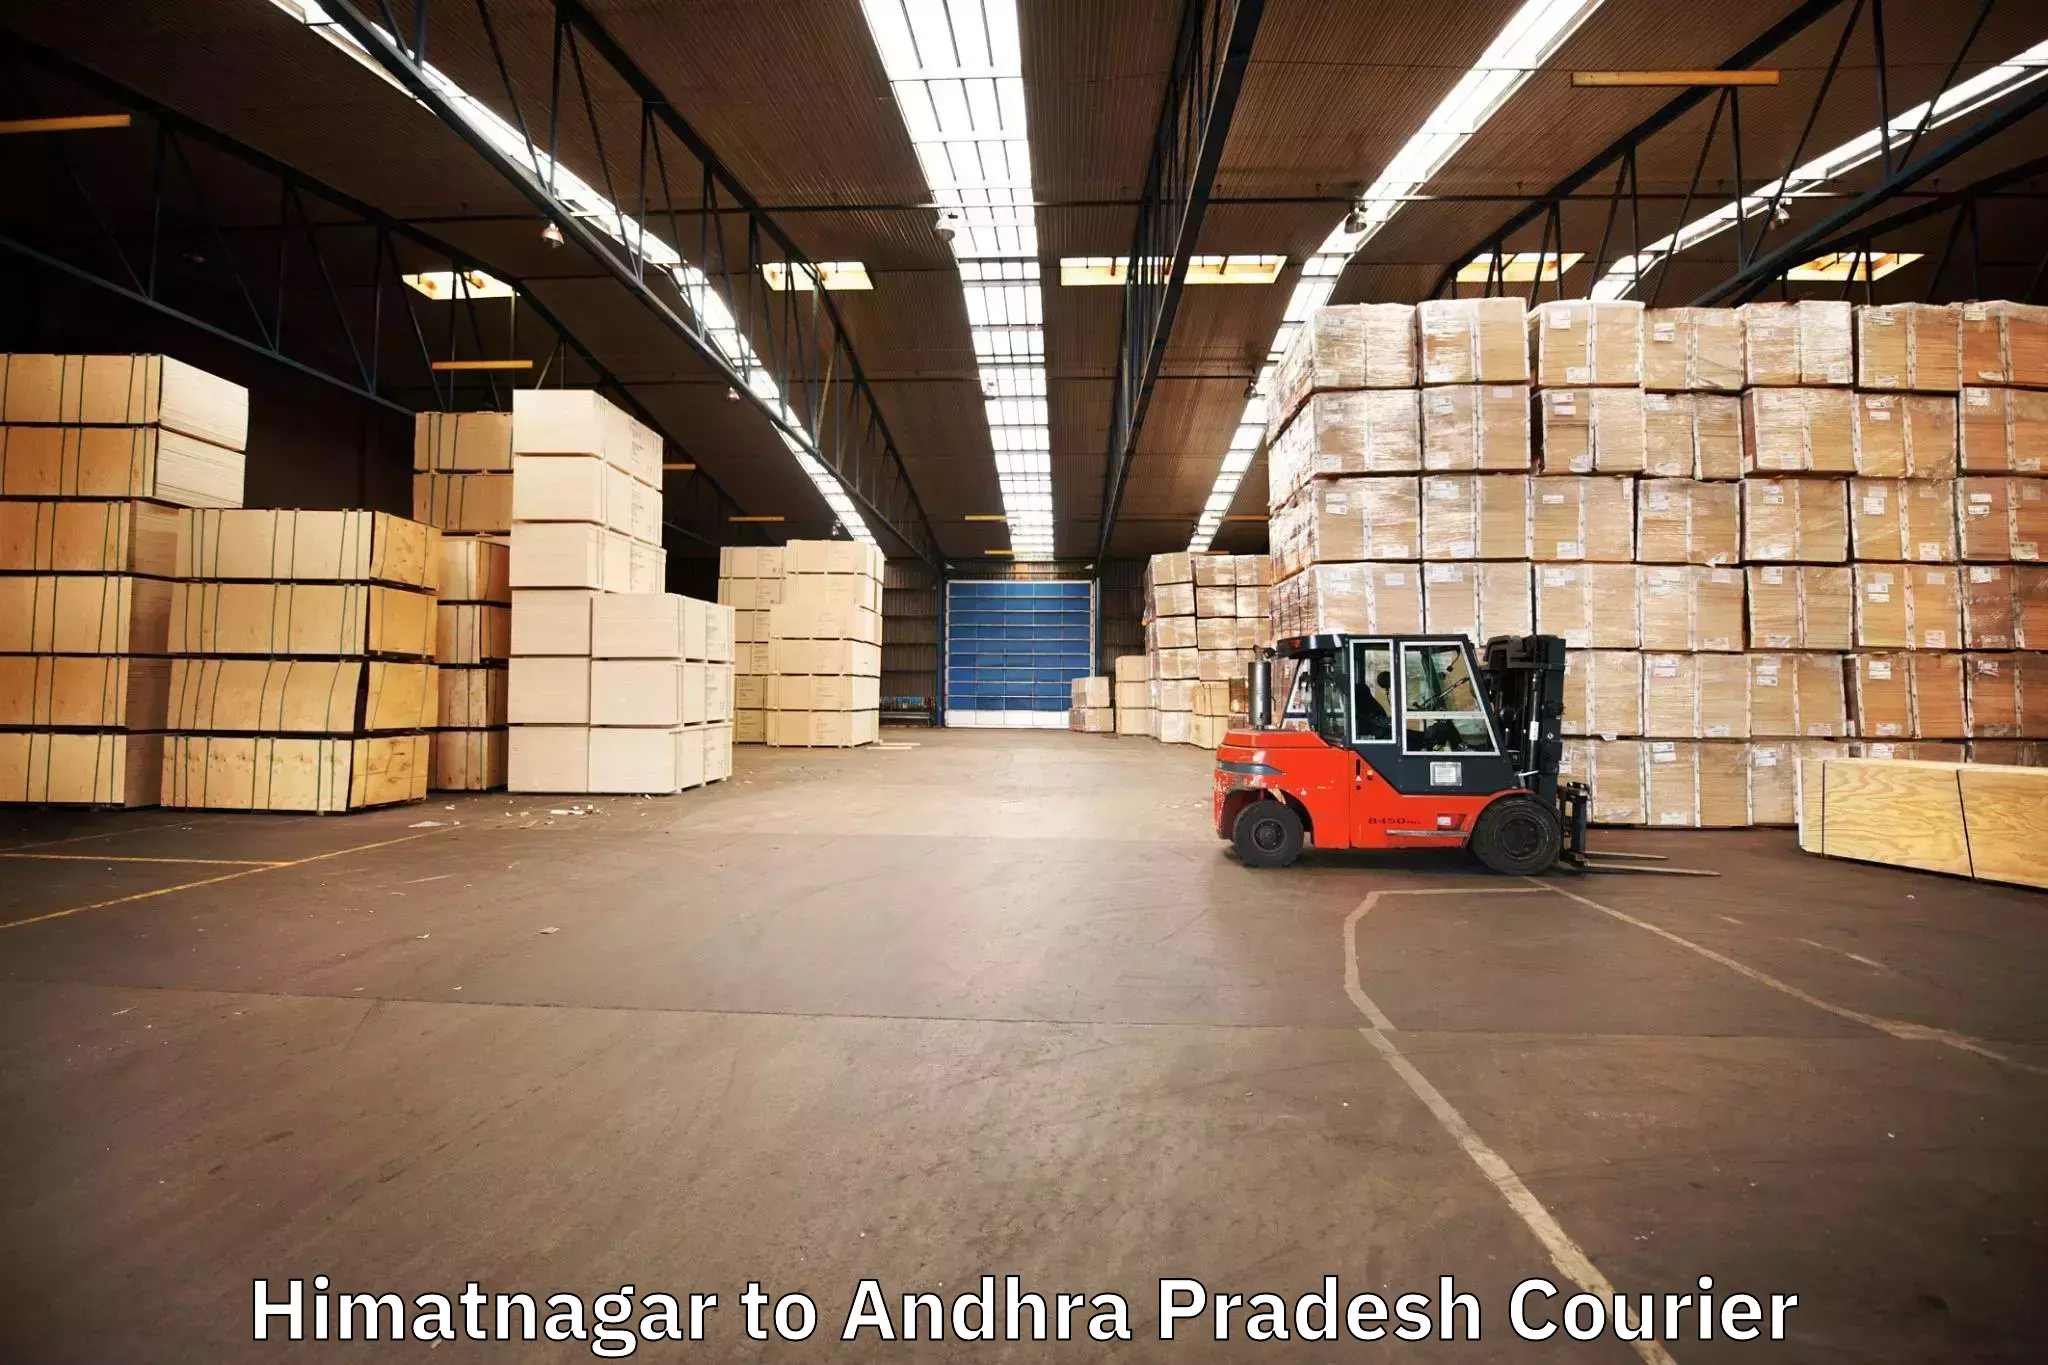 Seamless moving process Himatnagar to Puttur Tirupati